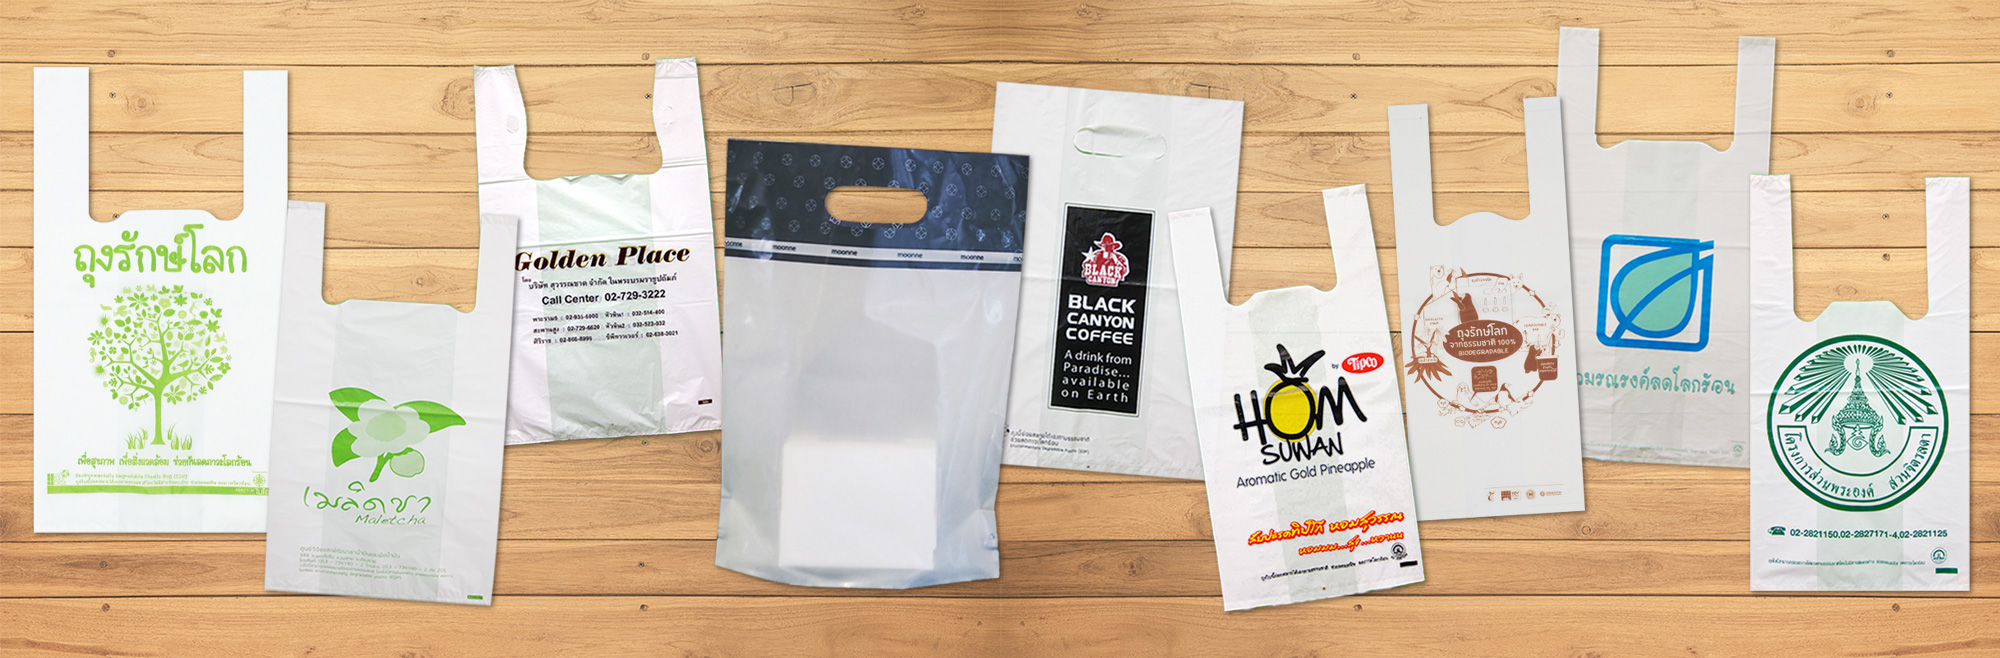 ถุงหูหิ้วรักษ์โลก 100% ย่อยสลายได้ - Biodegradable Bag